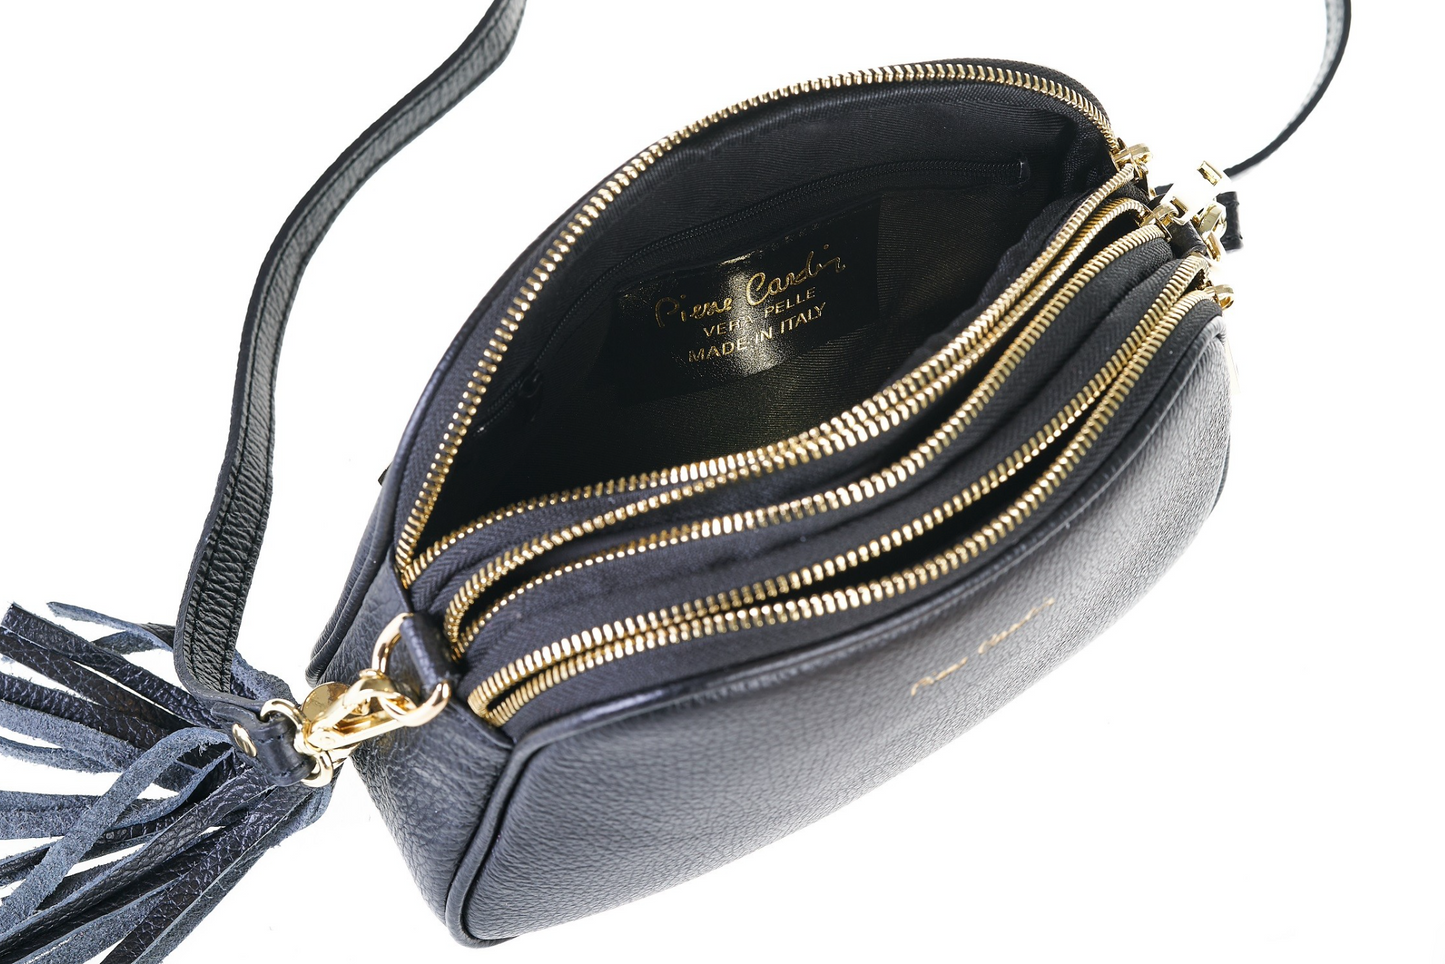 Pierre Cardin blue leather handbag for women